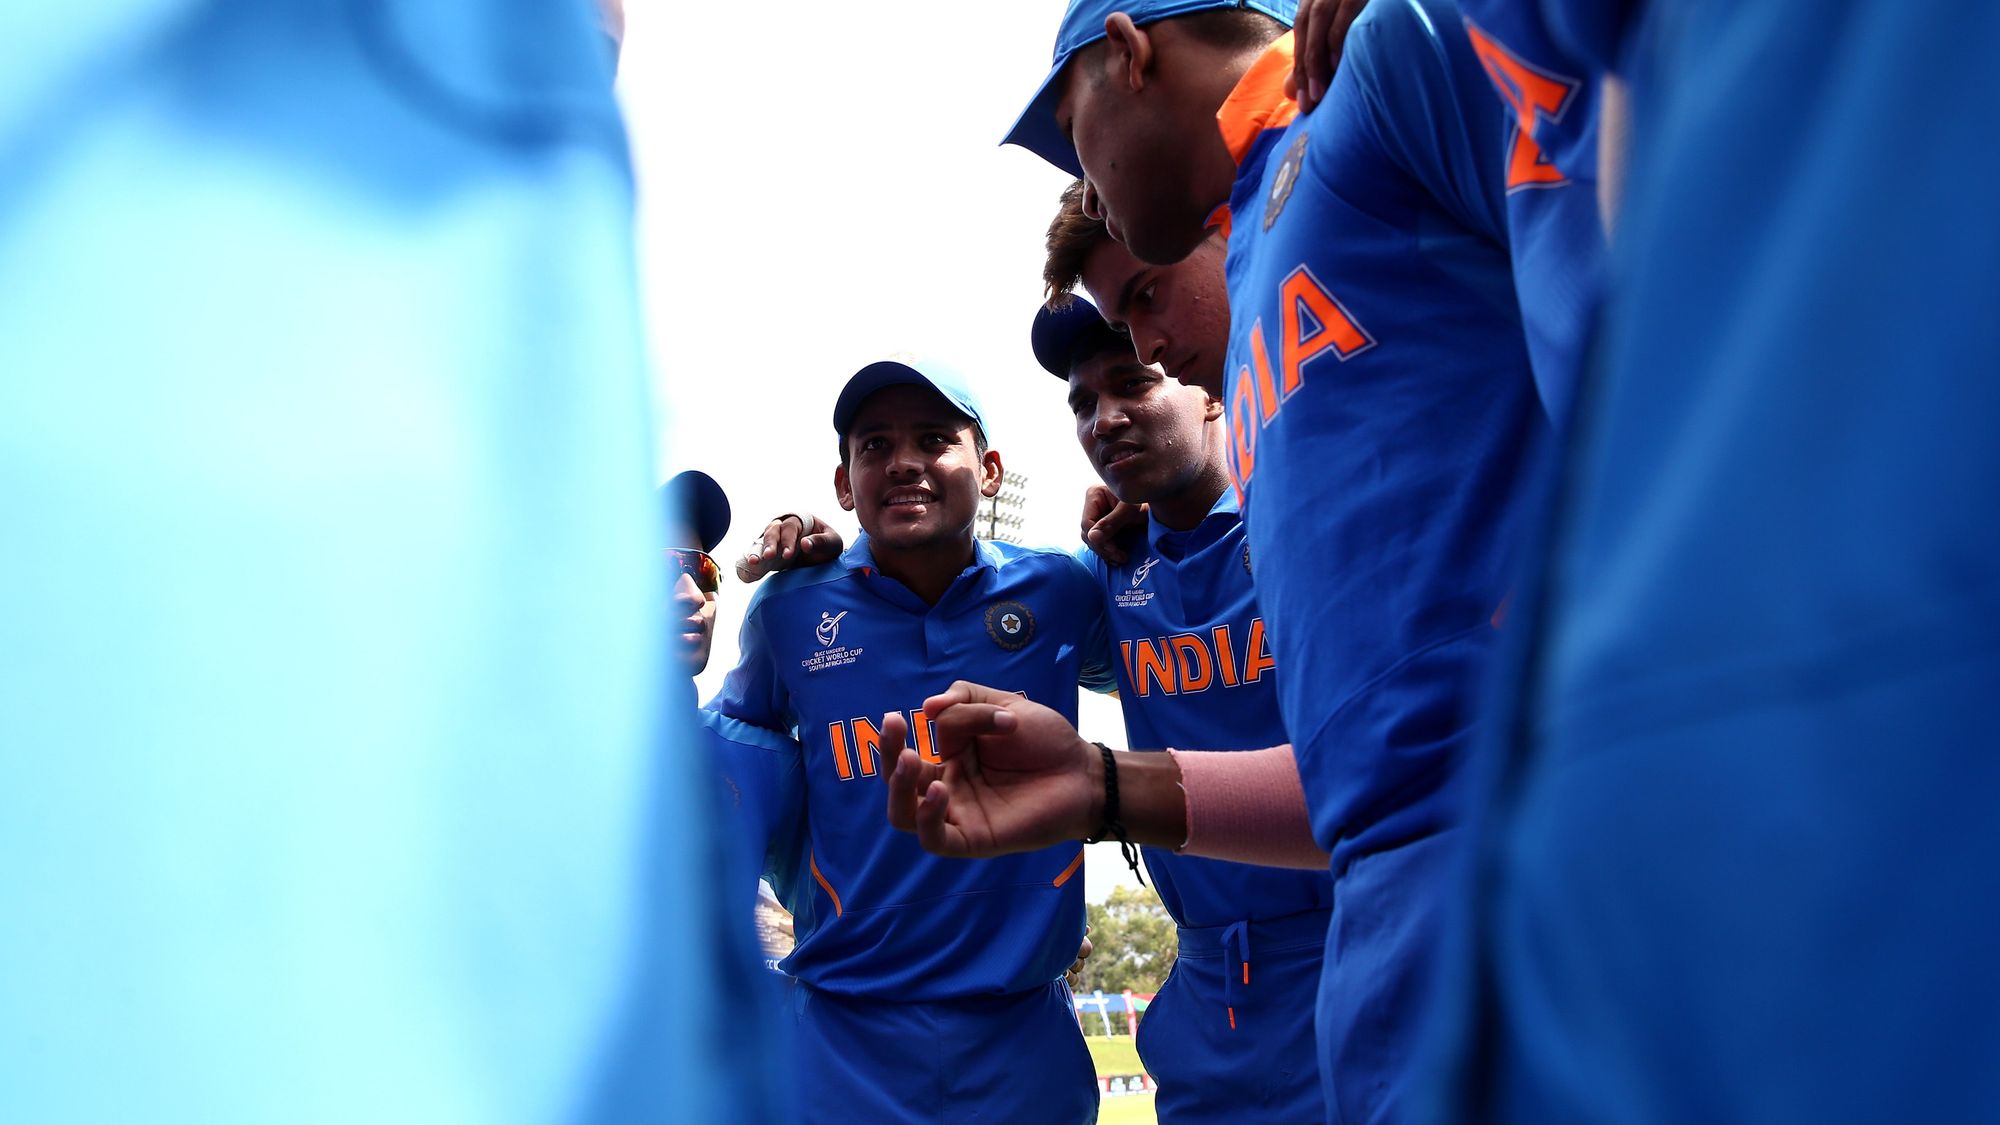 दक्षिण आफ्रिकेत सुरू असलेल्या १९ वर्षाखालील एकदिवसीय विश्वचषक स्पर्धेत भारतीय संघाने अवघ्या २९ चेंडूत विजय मिळवला. (फोटो सौजन्य - ICC वेबसाईट)